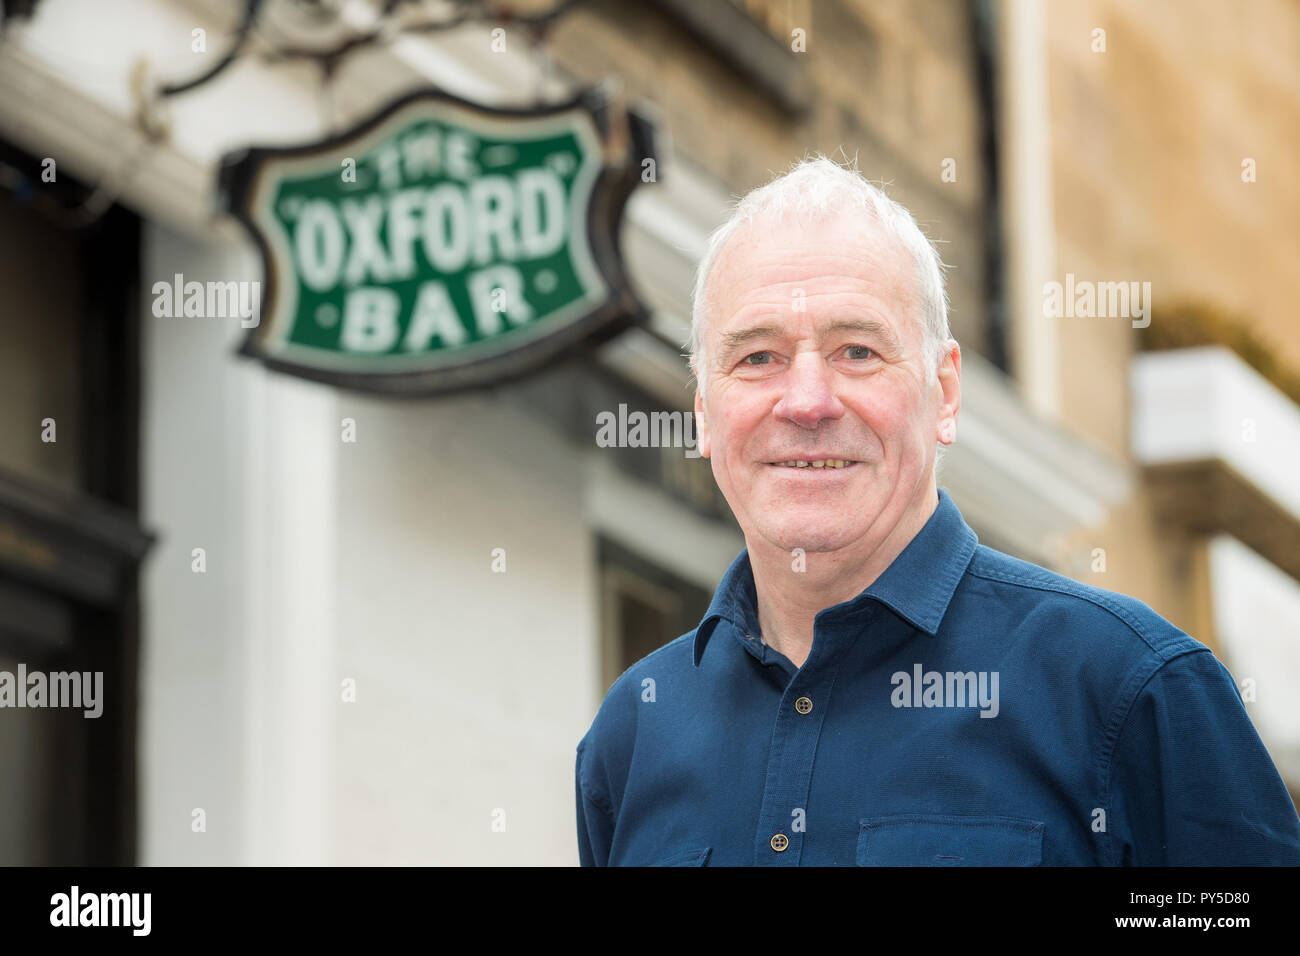 Harry Cullen il locatore della Oxford Bar su giovani St (Rebus luogo) è la vendita di fino e il barista Kirsty spera di poter acquistare il posto. Foto Stock